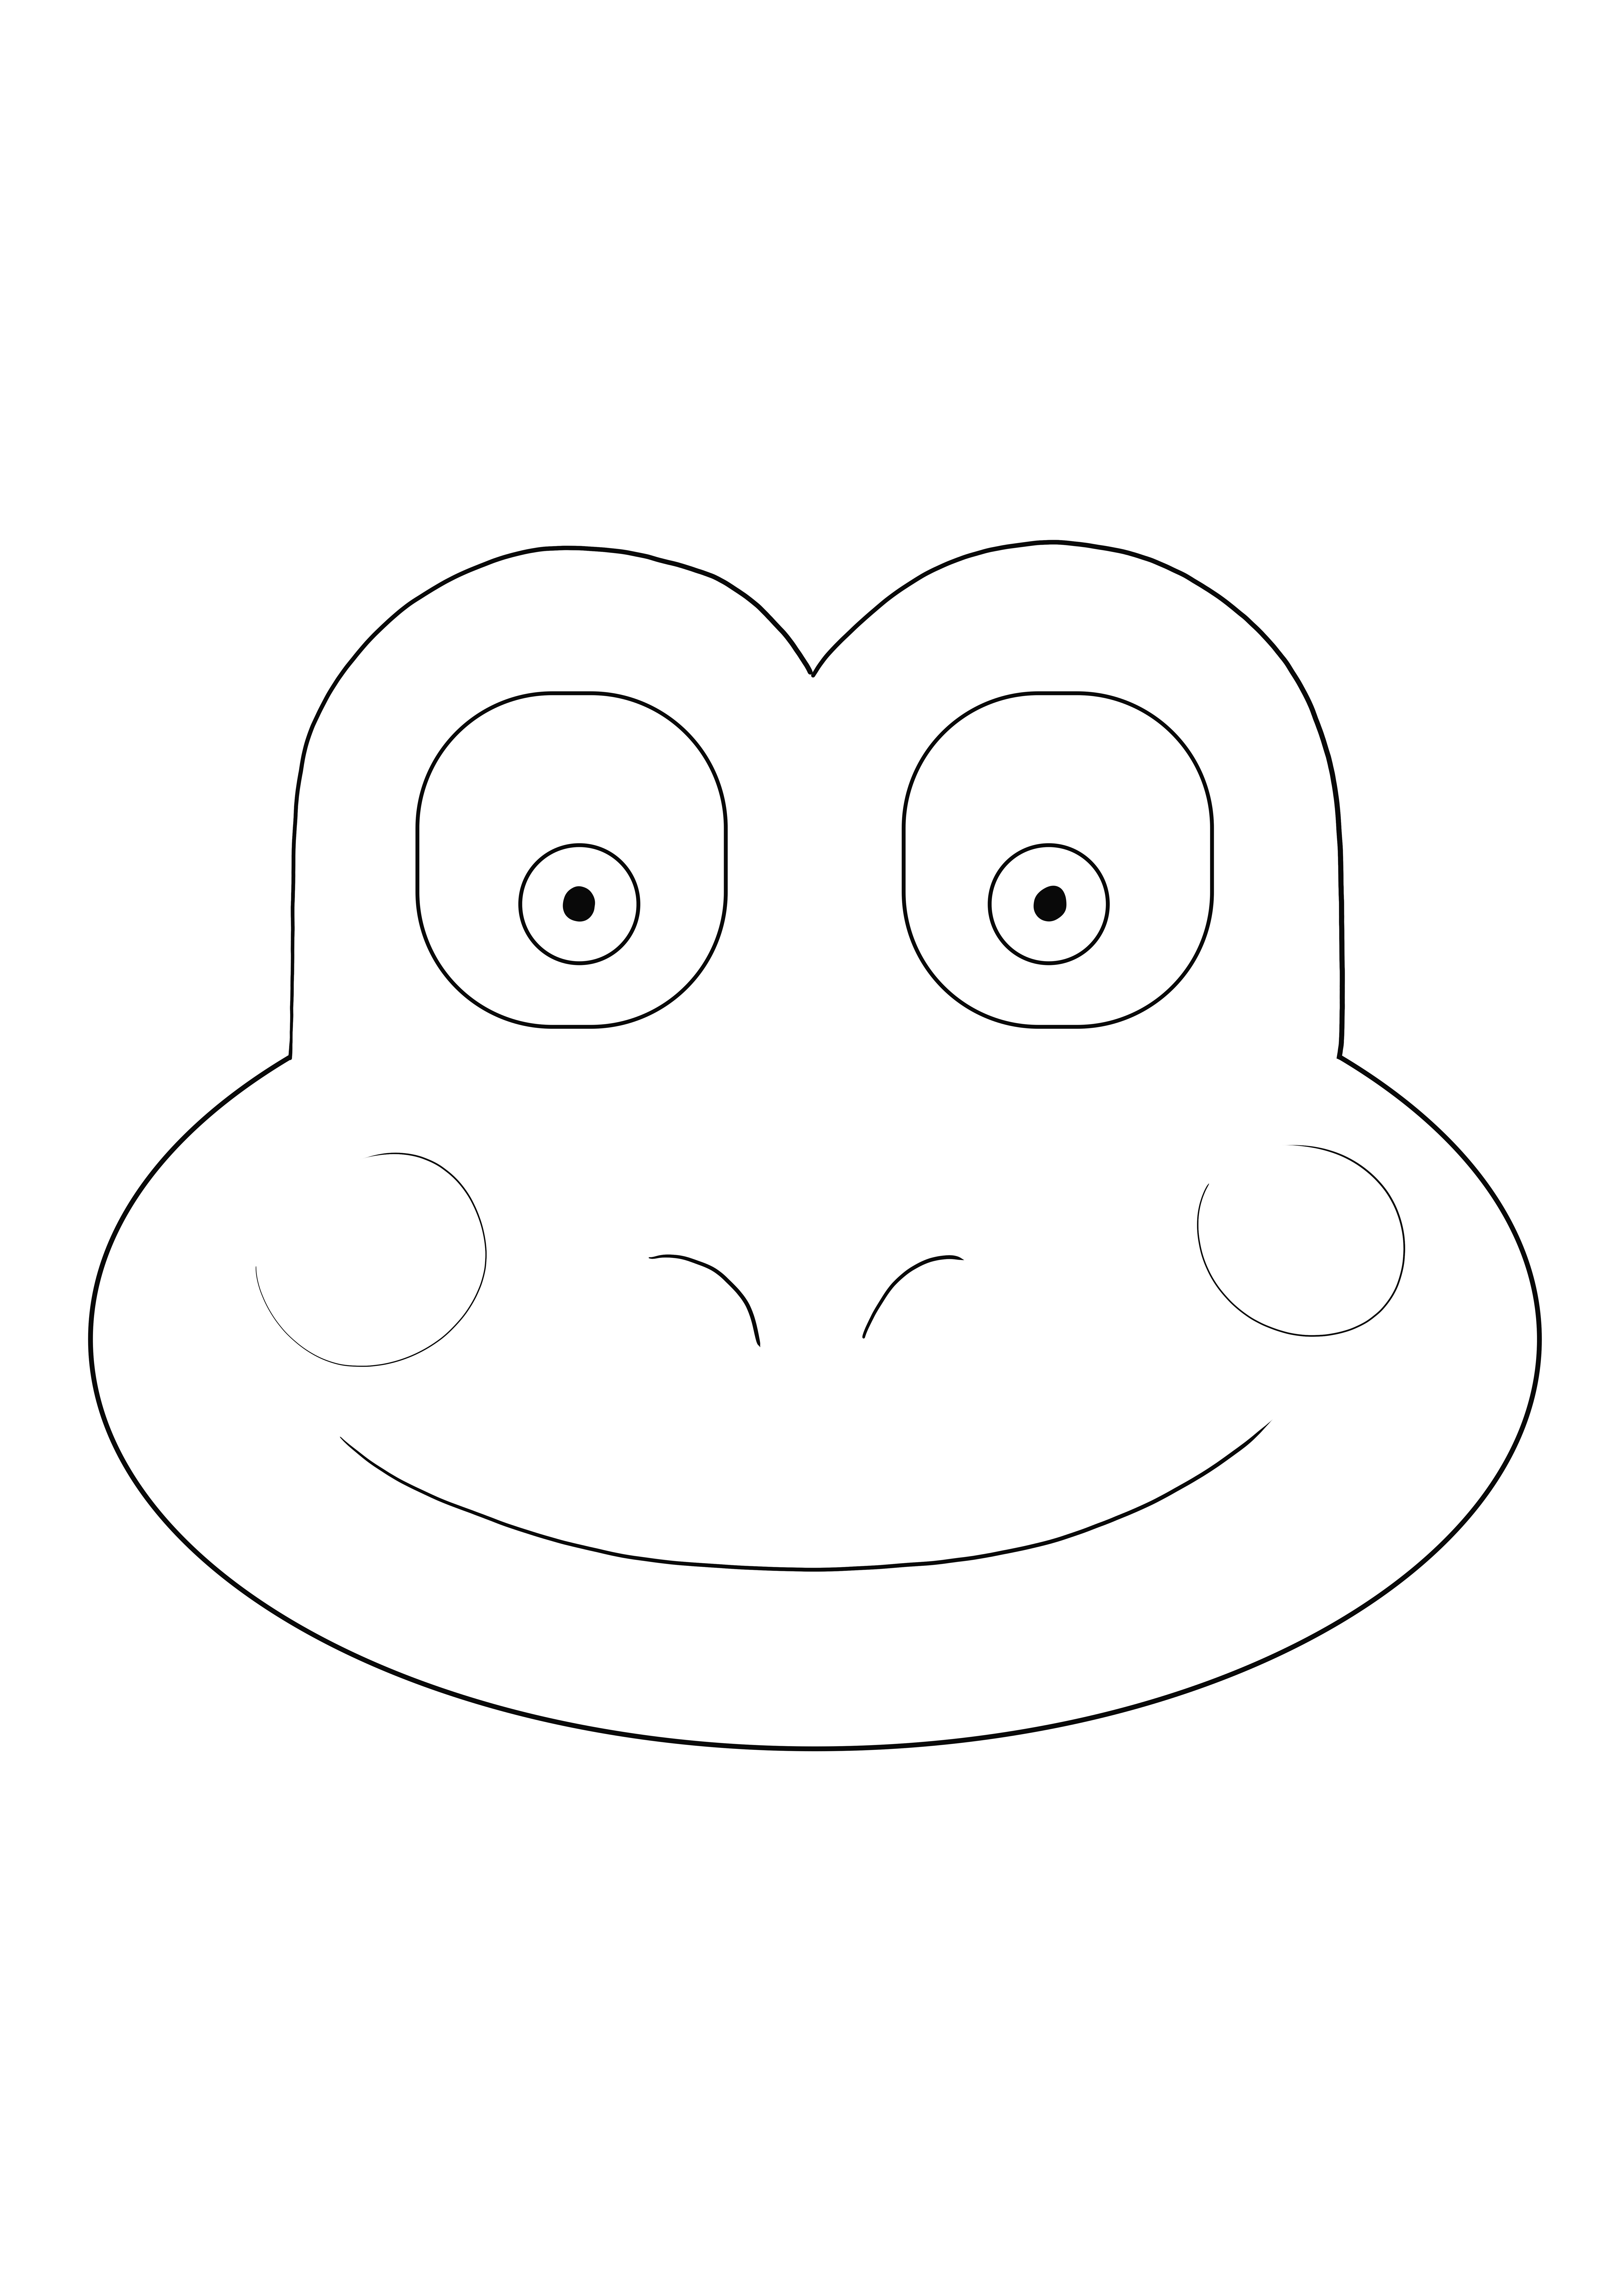 Frog Face kleurplaat gratis om af te drukken en te downloaden voor kinderen van alle leeftijden kleurplaat